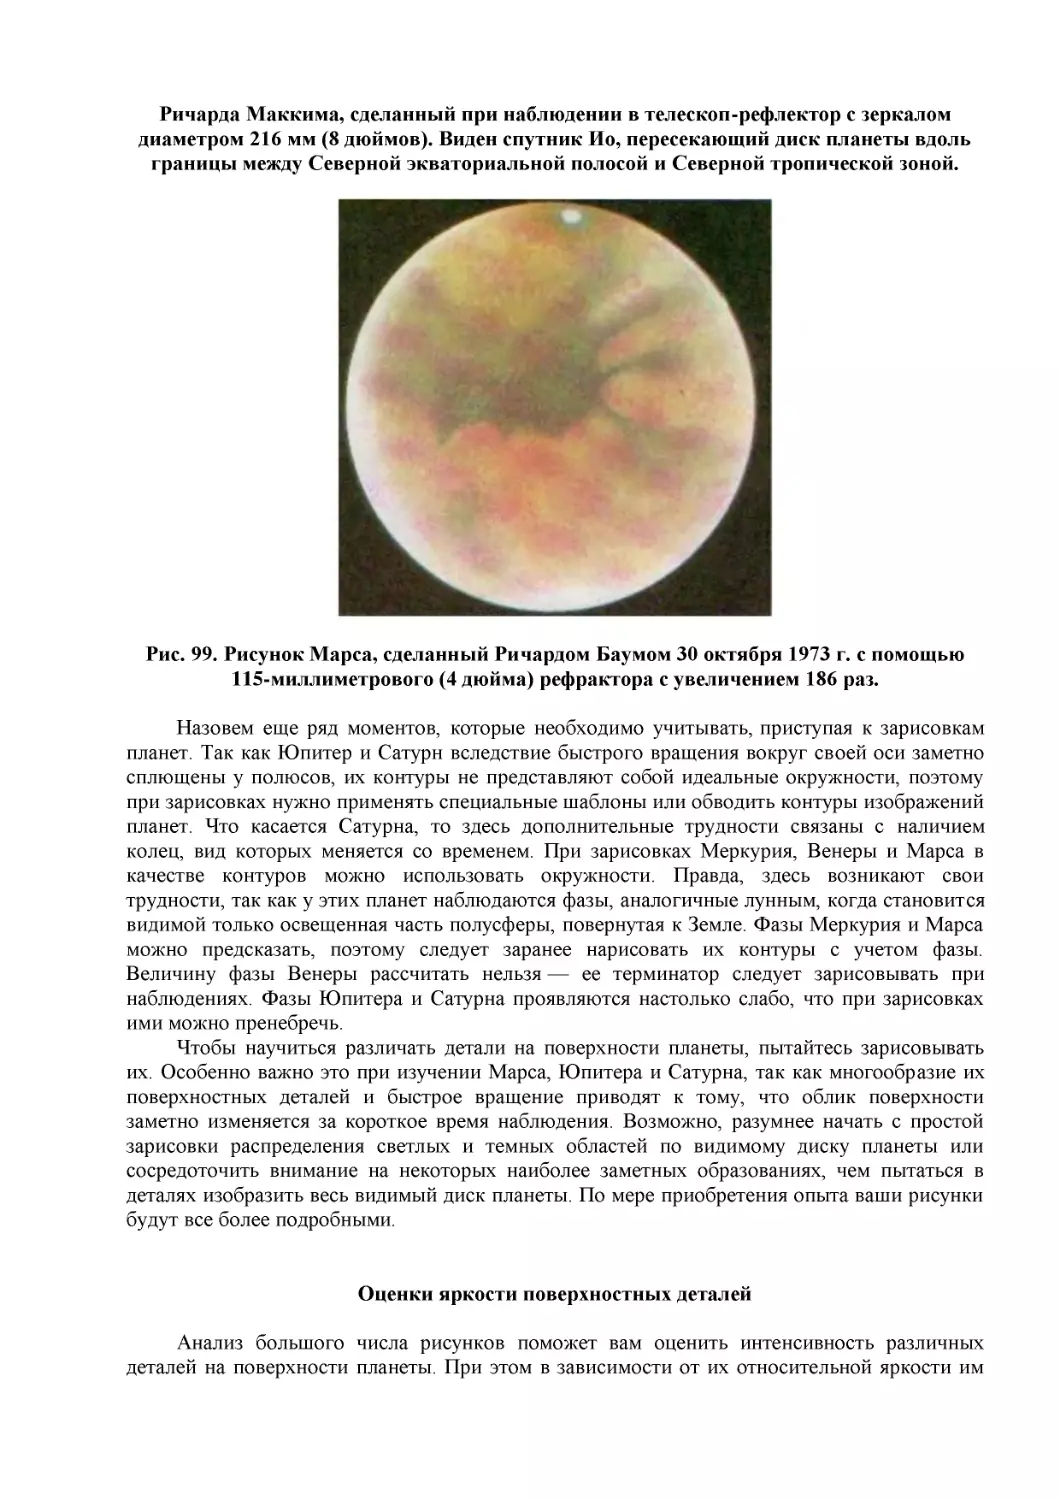 Рис. 99. Рисунок Марса, сделанный Ричардом Баумом 30 октября 1973 г. с помощью 115-миллиметрового (4 дюйма) рефрактора с увеличением 186 раз.
Оценки яркости поверхностных деталей